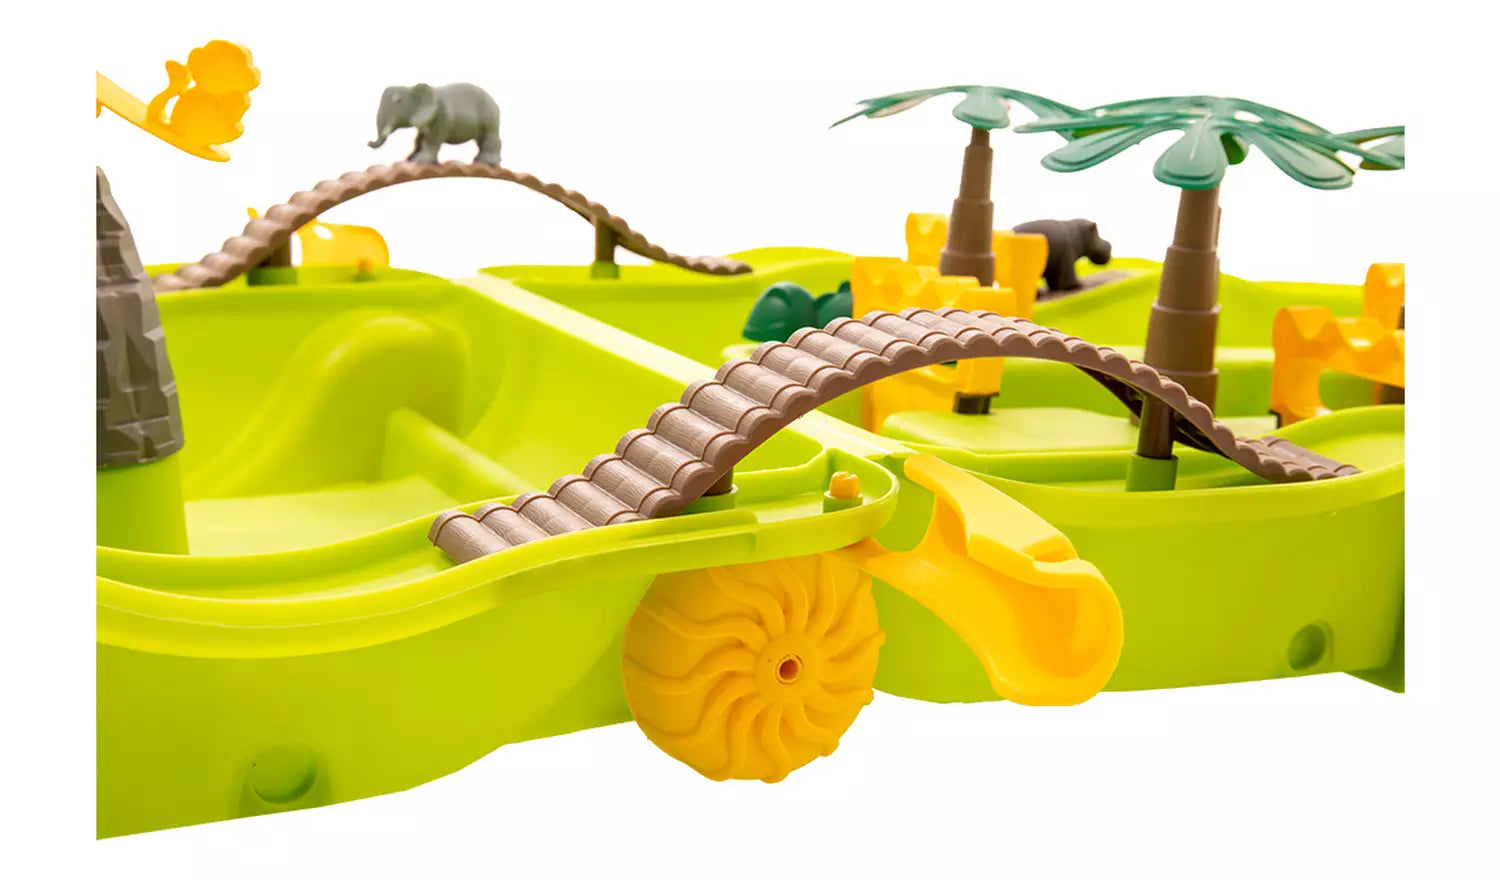 Jungle Water Fun Trolley